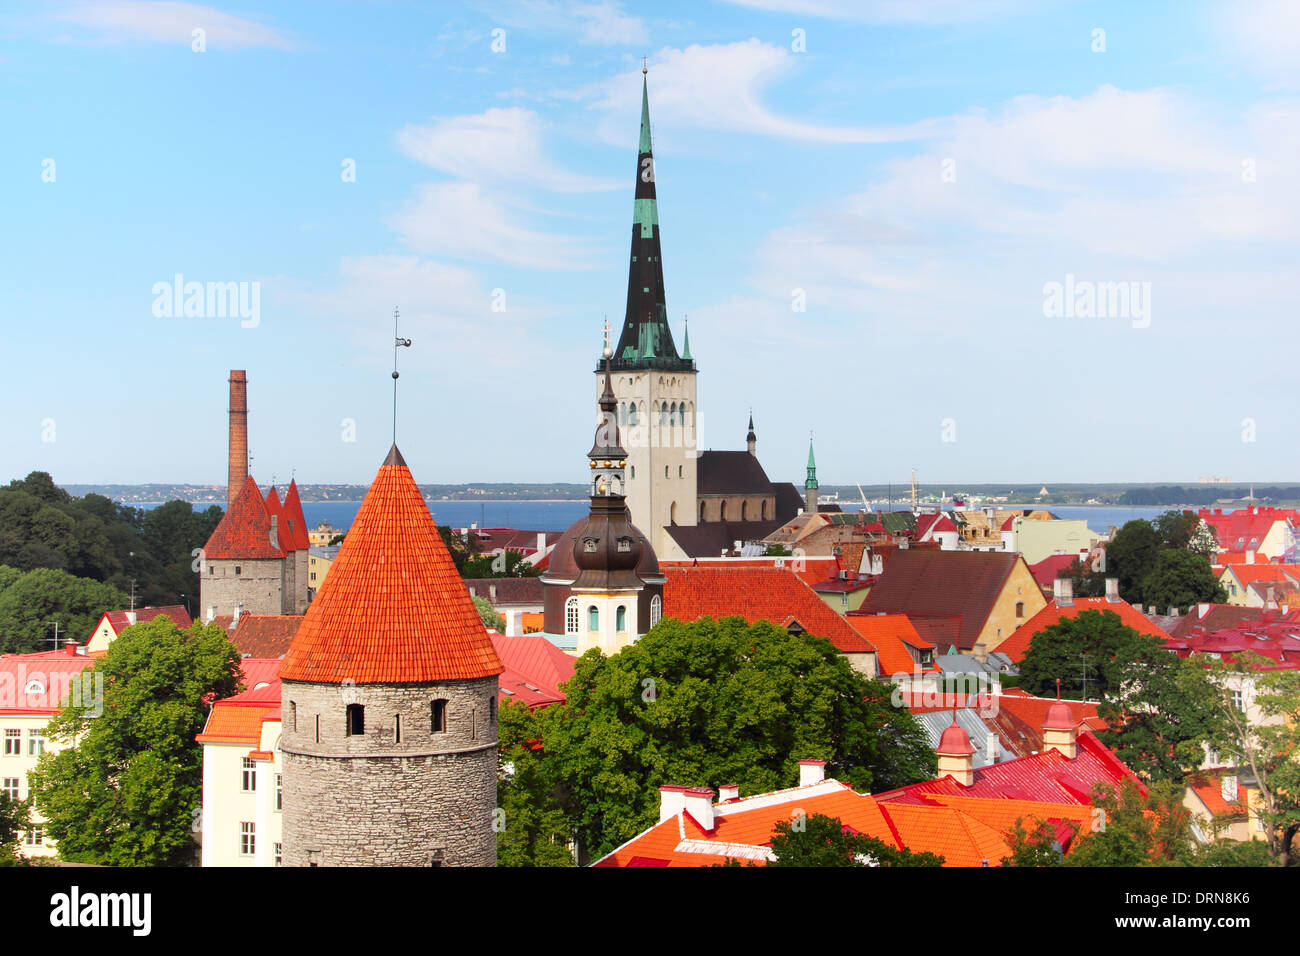 Old town of Tallinn Stock Photo